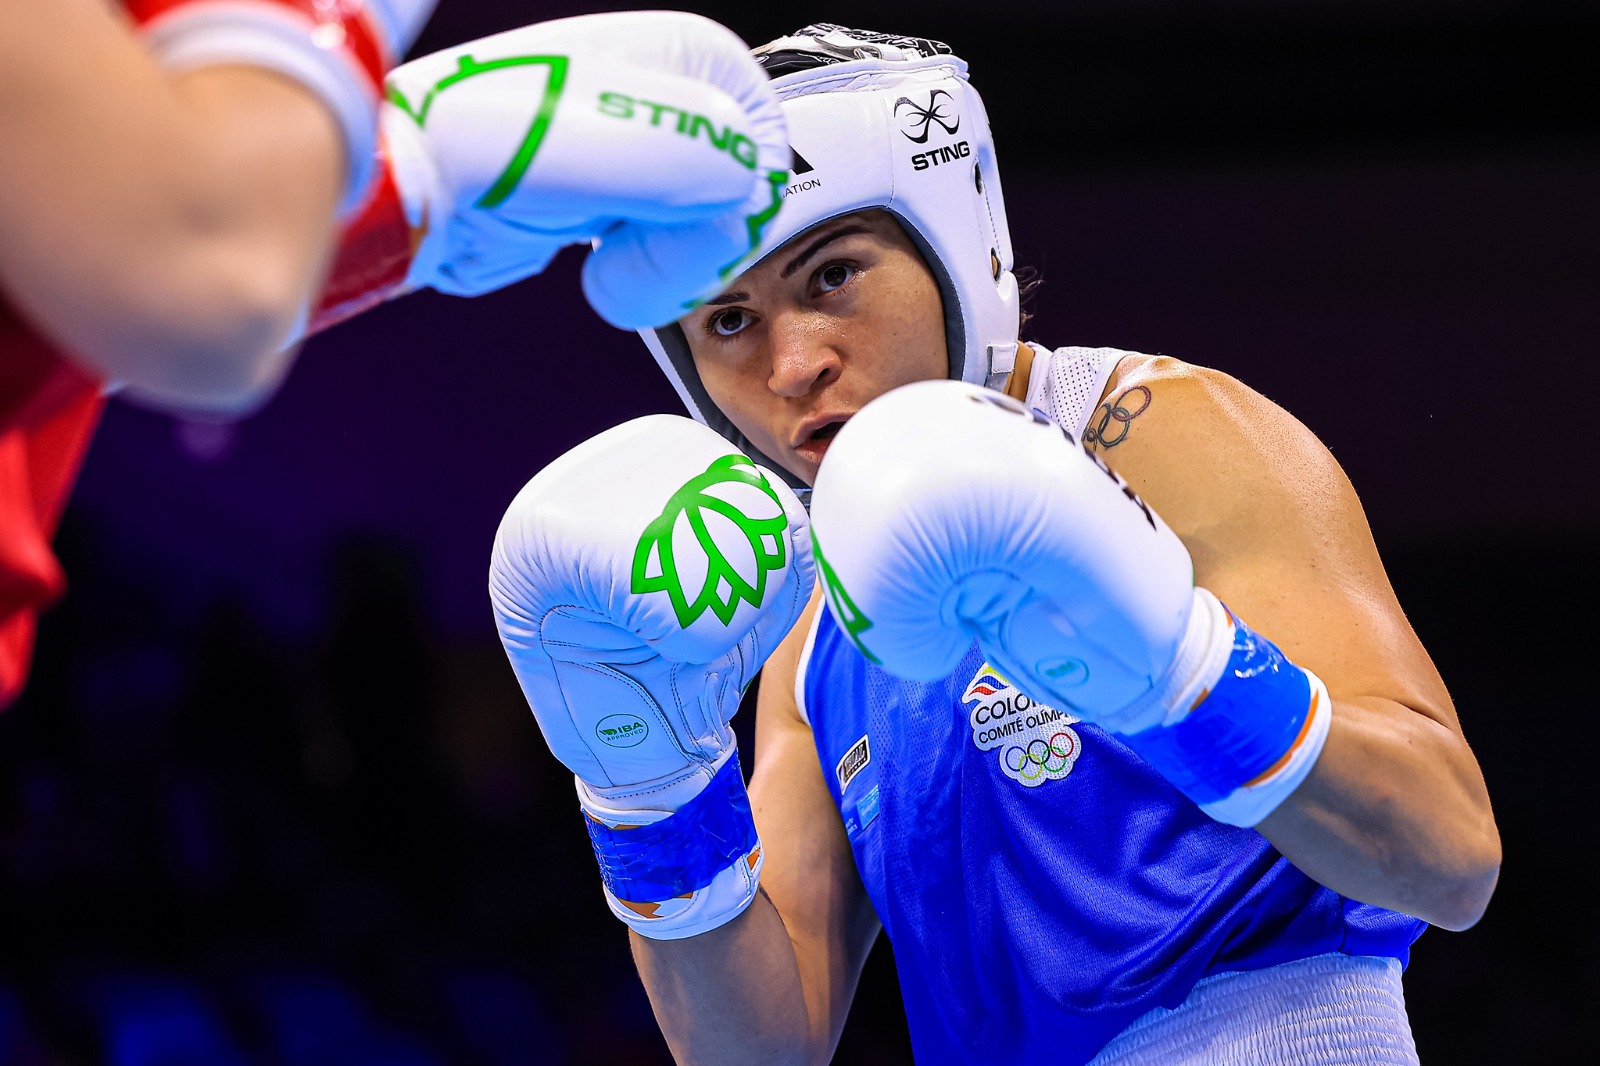 Yeni Arias, nacida en Roldanillo, Valle del Cauca, peleará por primera vez por el oro en un Mundial Femenino de Boxeo.

(MinDeporte)